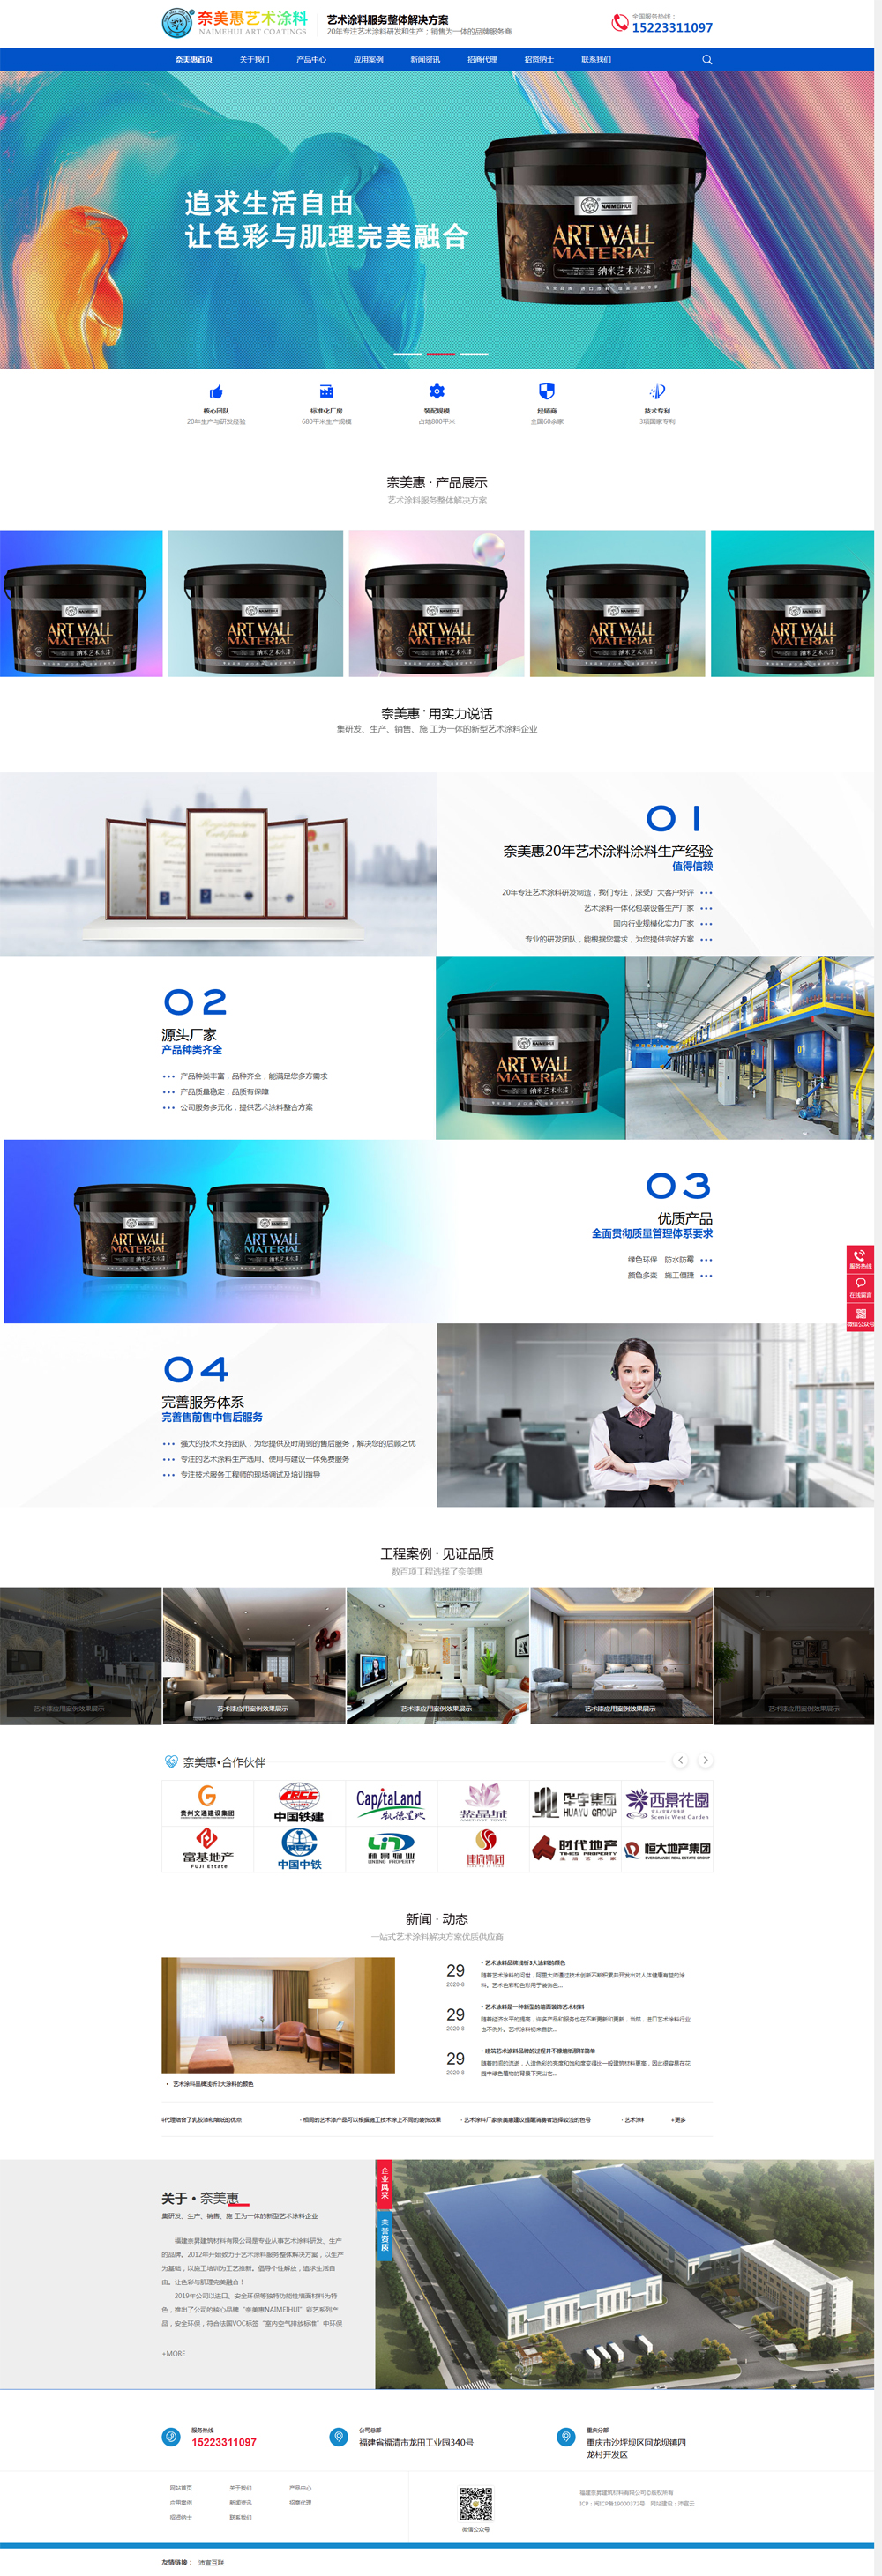 贵州艺术涂料品牌营销型网站正式上线